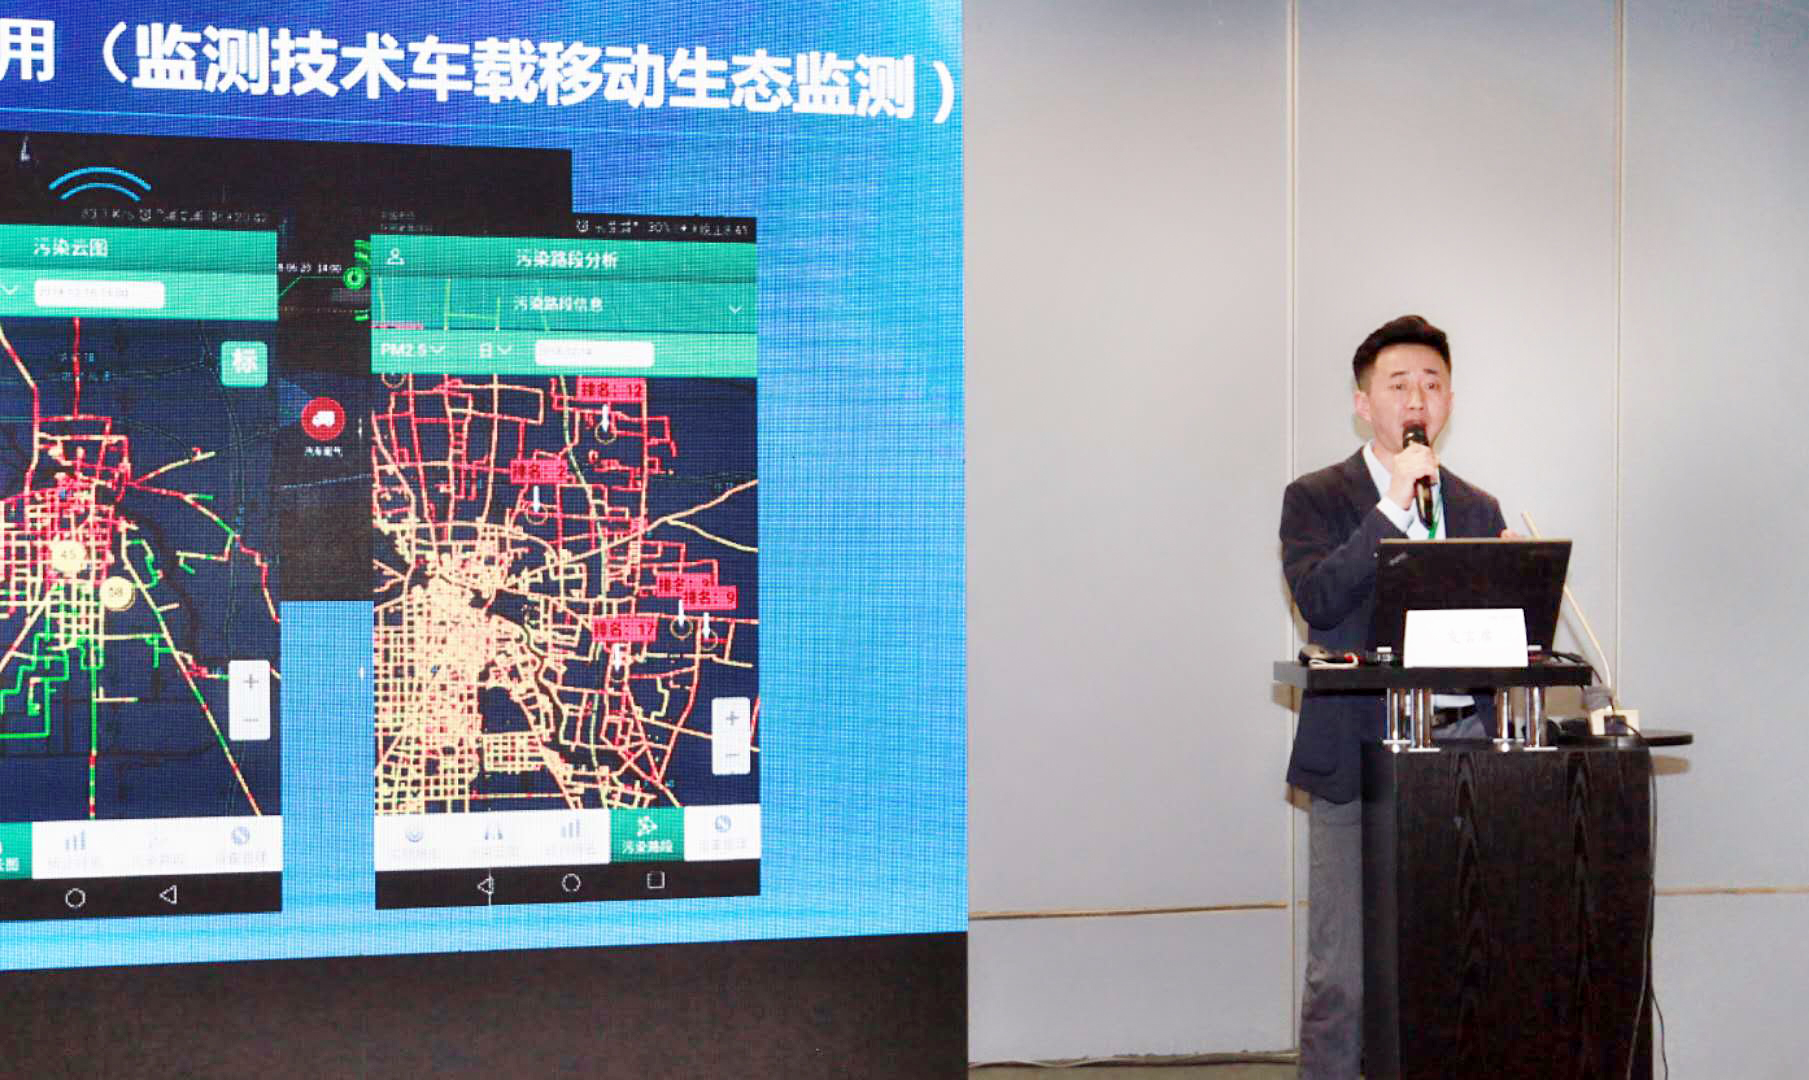 佳华科技环保总工程师刘佳舵分享流动AI系统